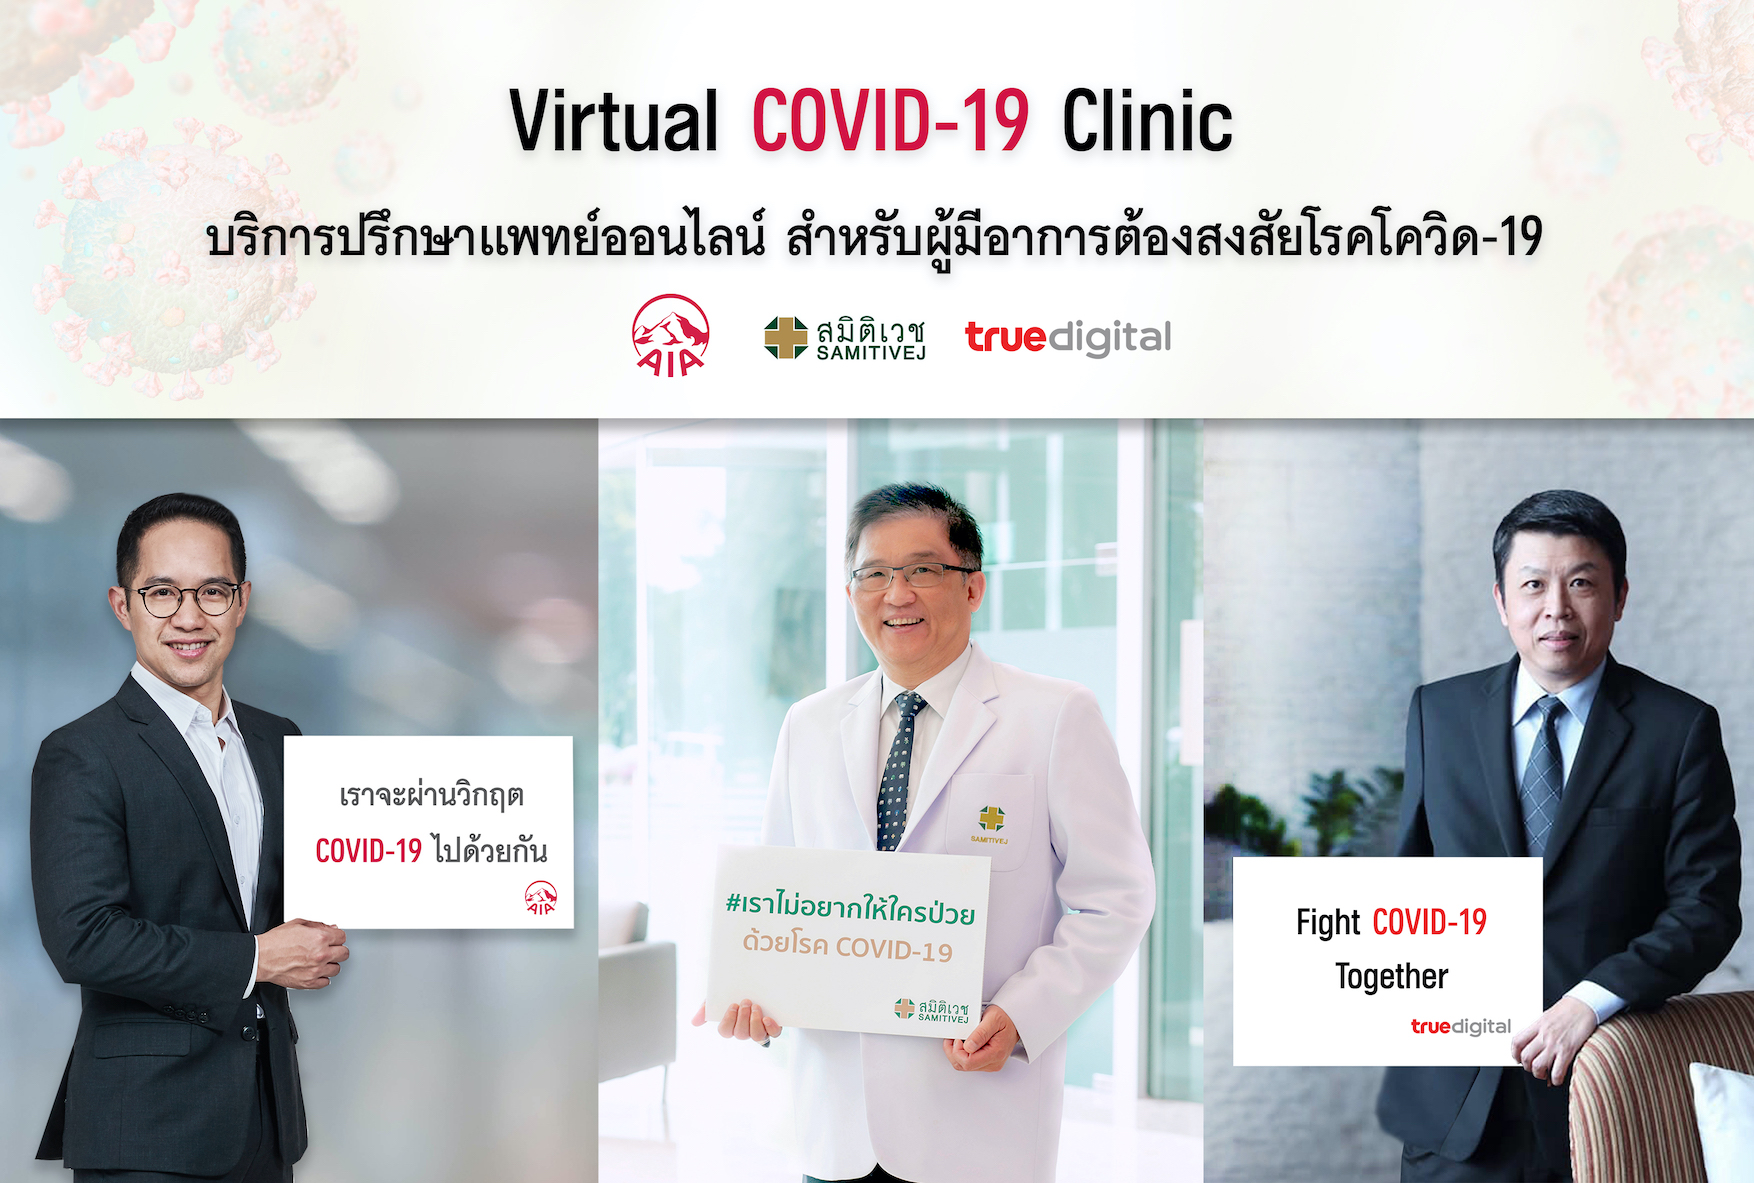 ทรู ดิจิทัล กรุ๊ป จับมือพันธมิตรชั้น เปิดบริการเฉพาะกิจ Virtual COVID-19 Clinic by AIA | True Digital Group | Samitivej